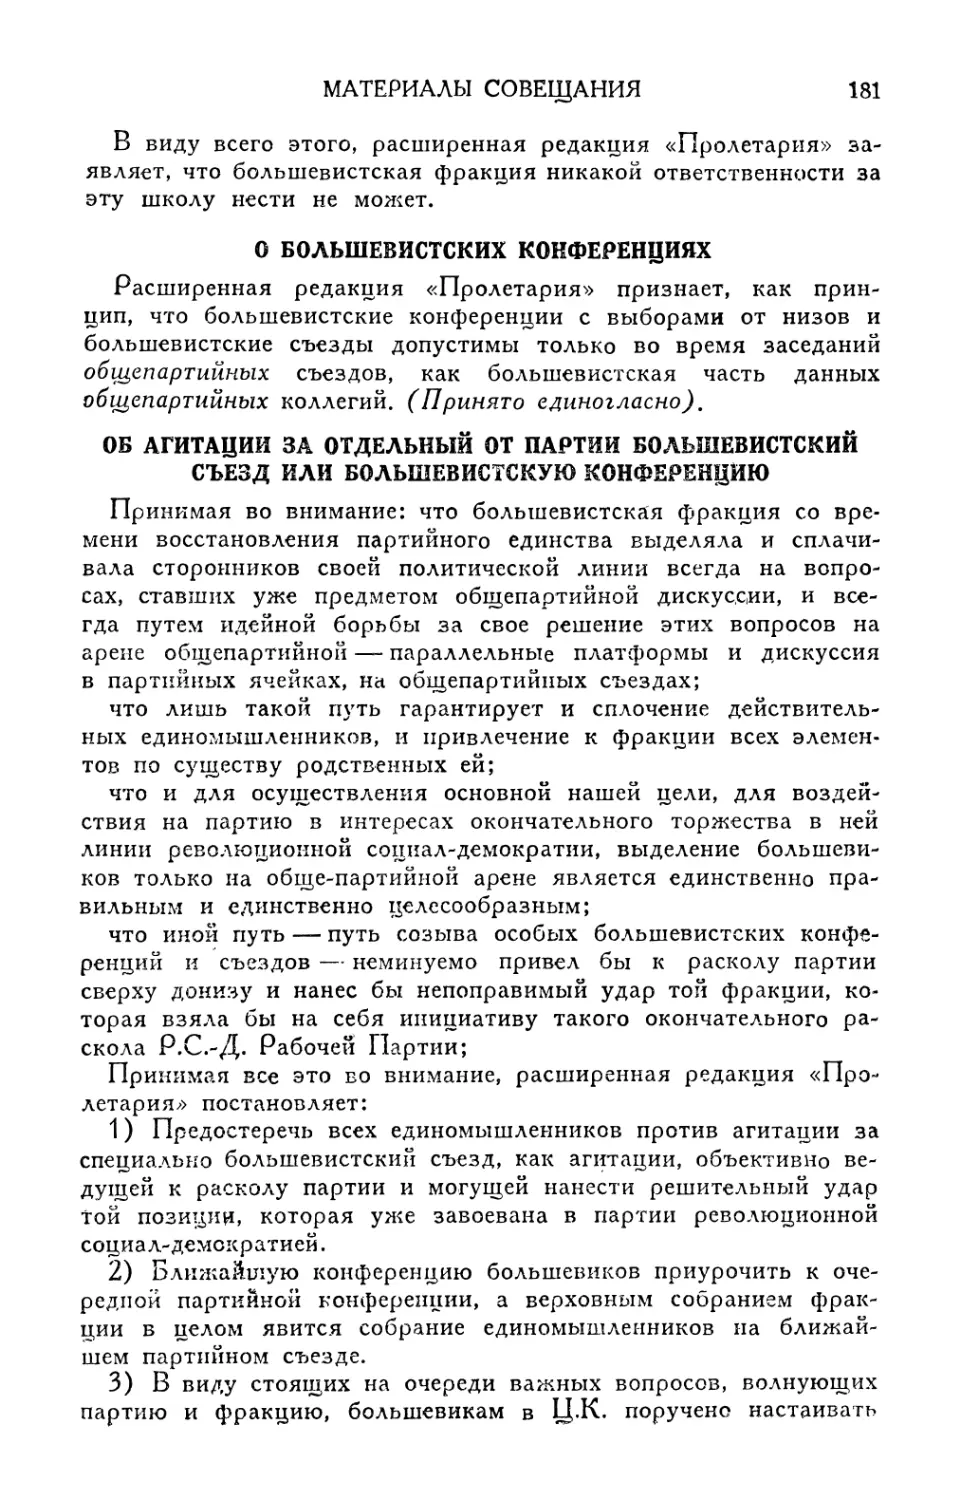 О большевистских конференциях
Об агитации за отдельный от партии большевистский съезд или большевистскую конференцию